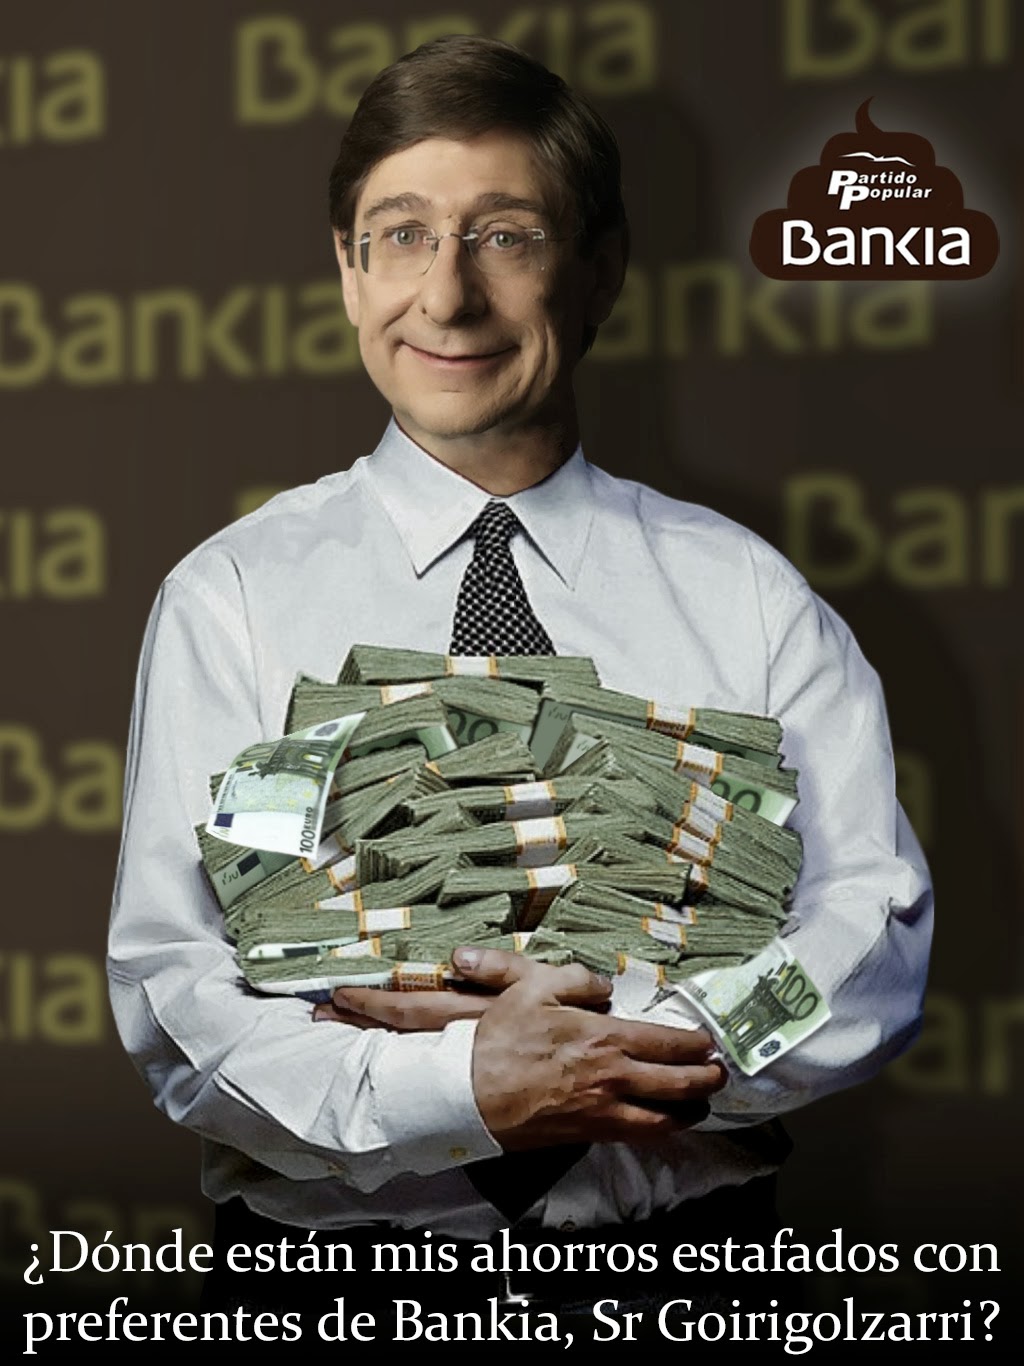 Ignacio goirigolzarri, devuelvenos nuestros ahorros estafados por Bankia